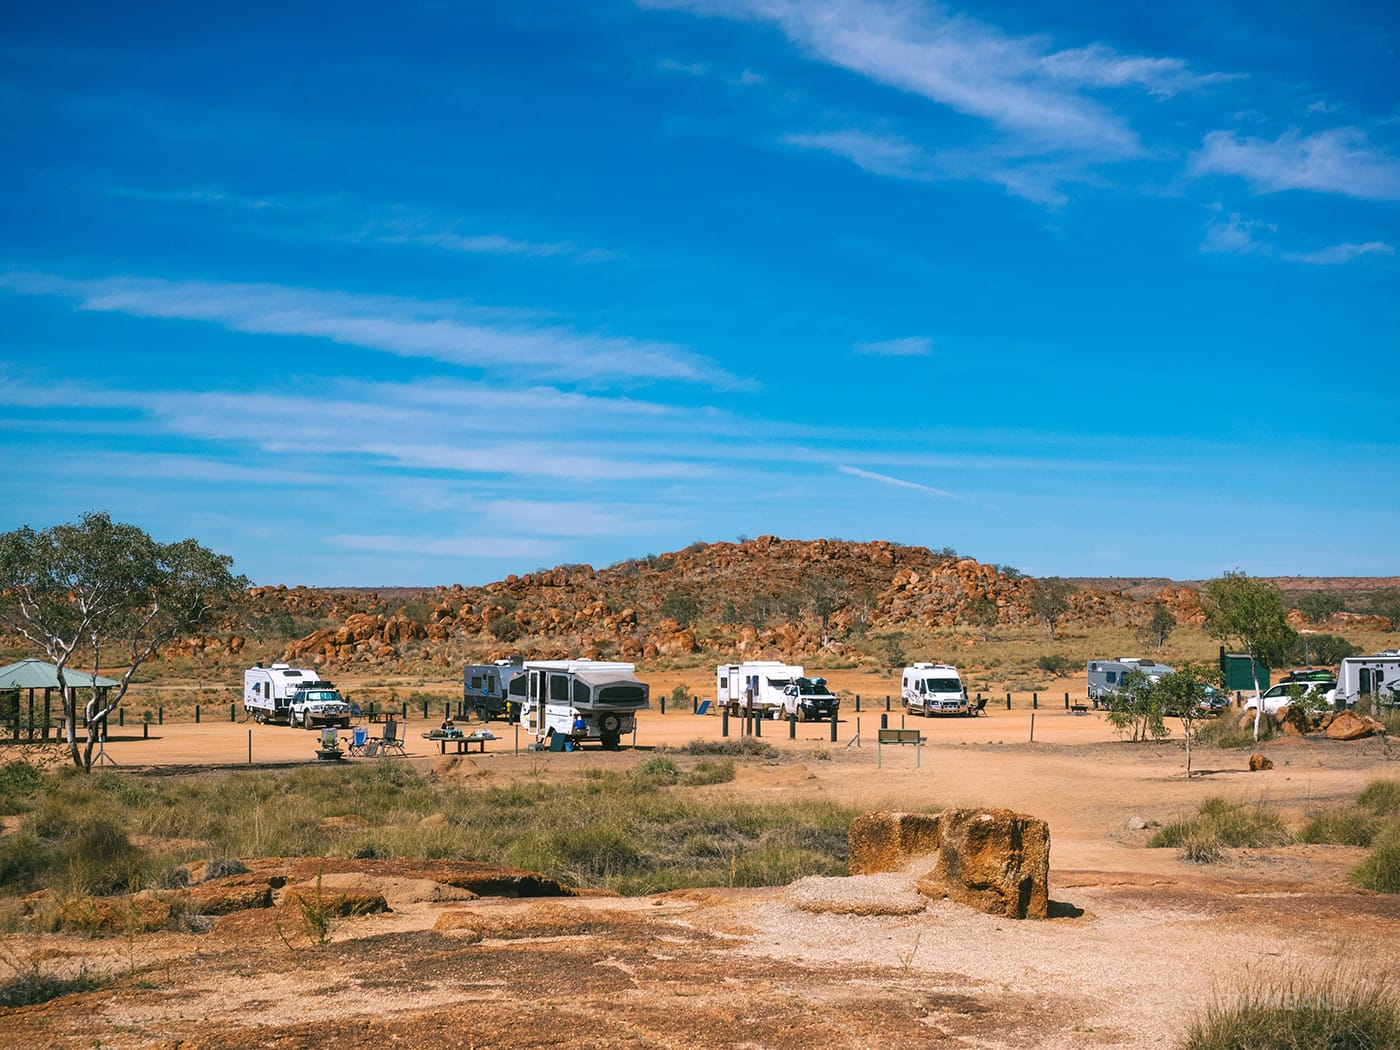 NT Australia - Karlu Karlu - Campervans parked by the other entrance